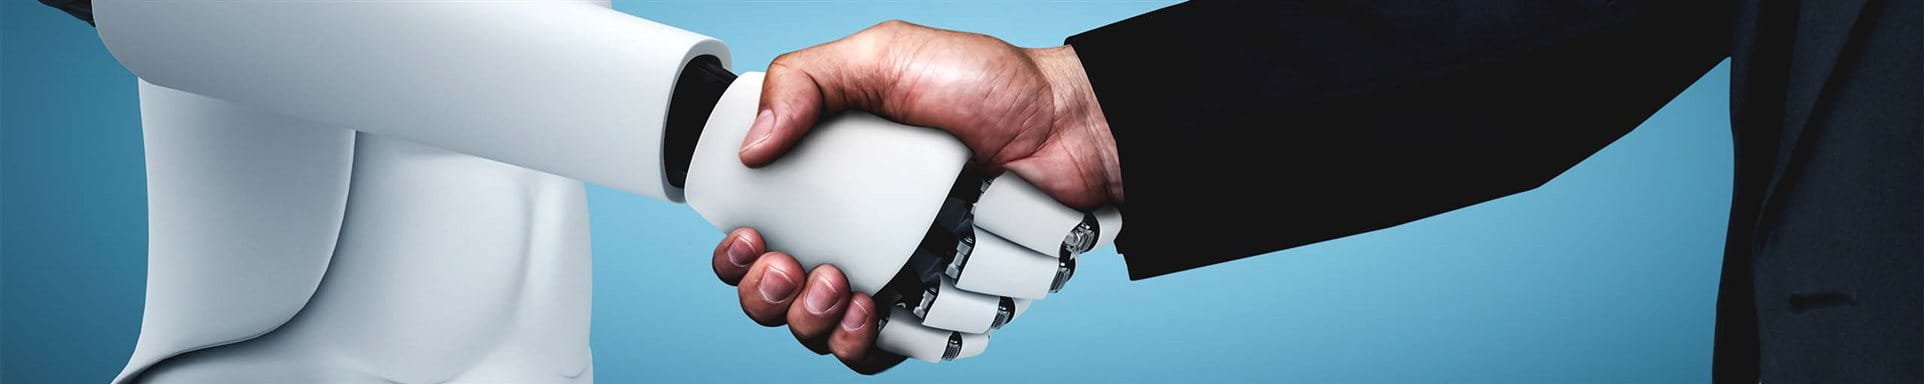 Un robot et un homme se serrent la main